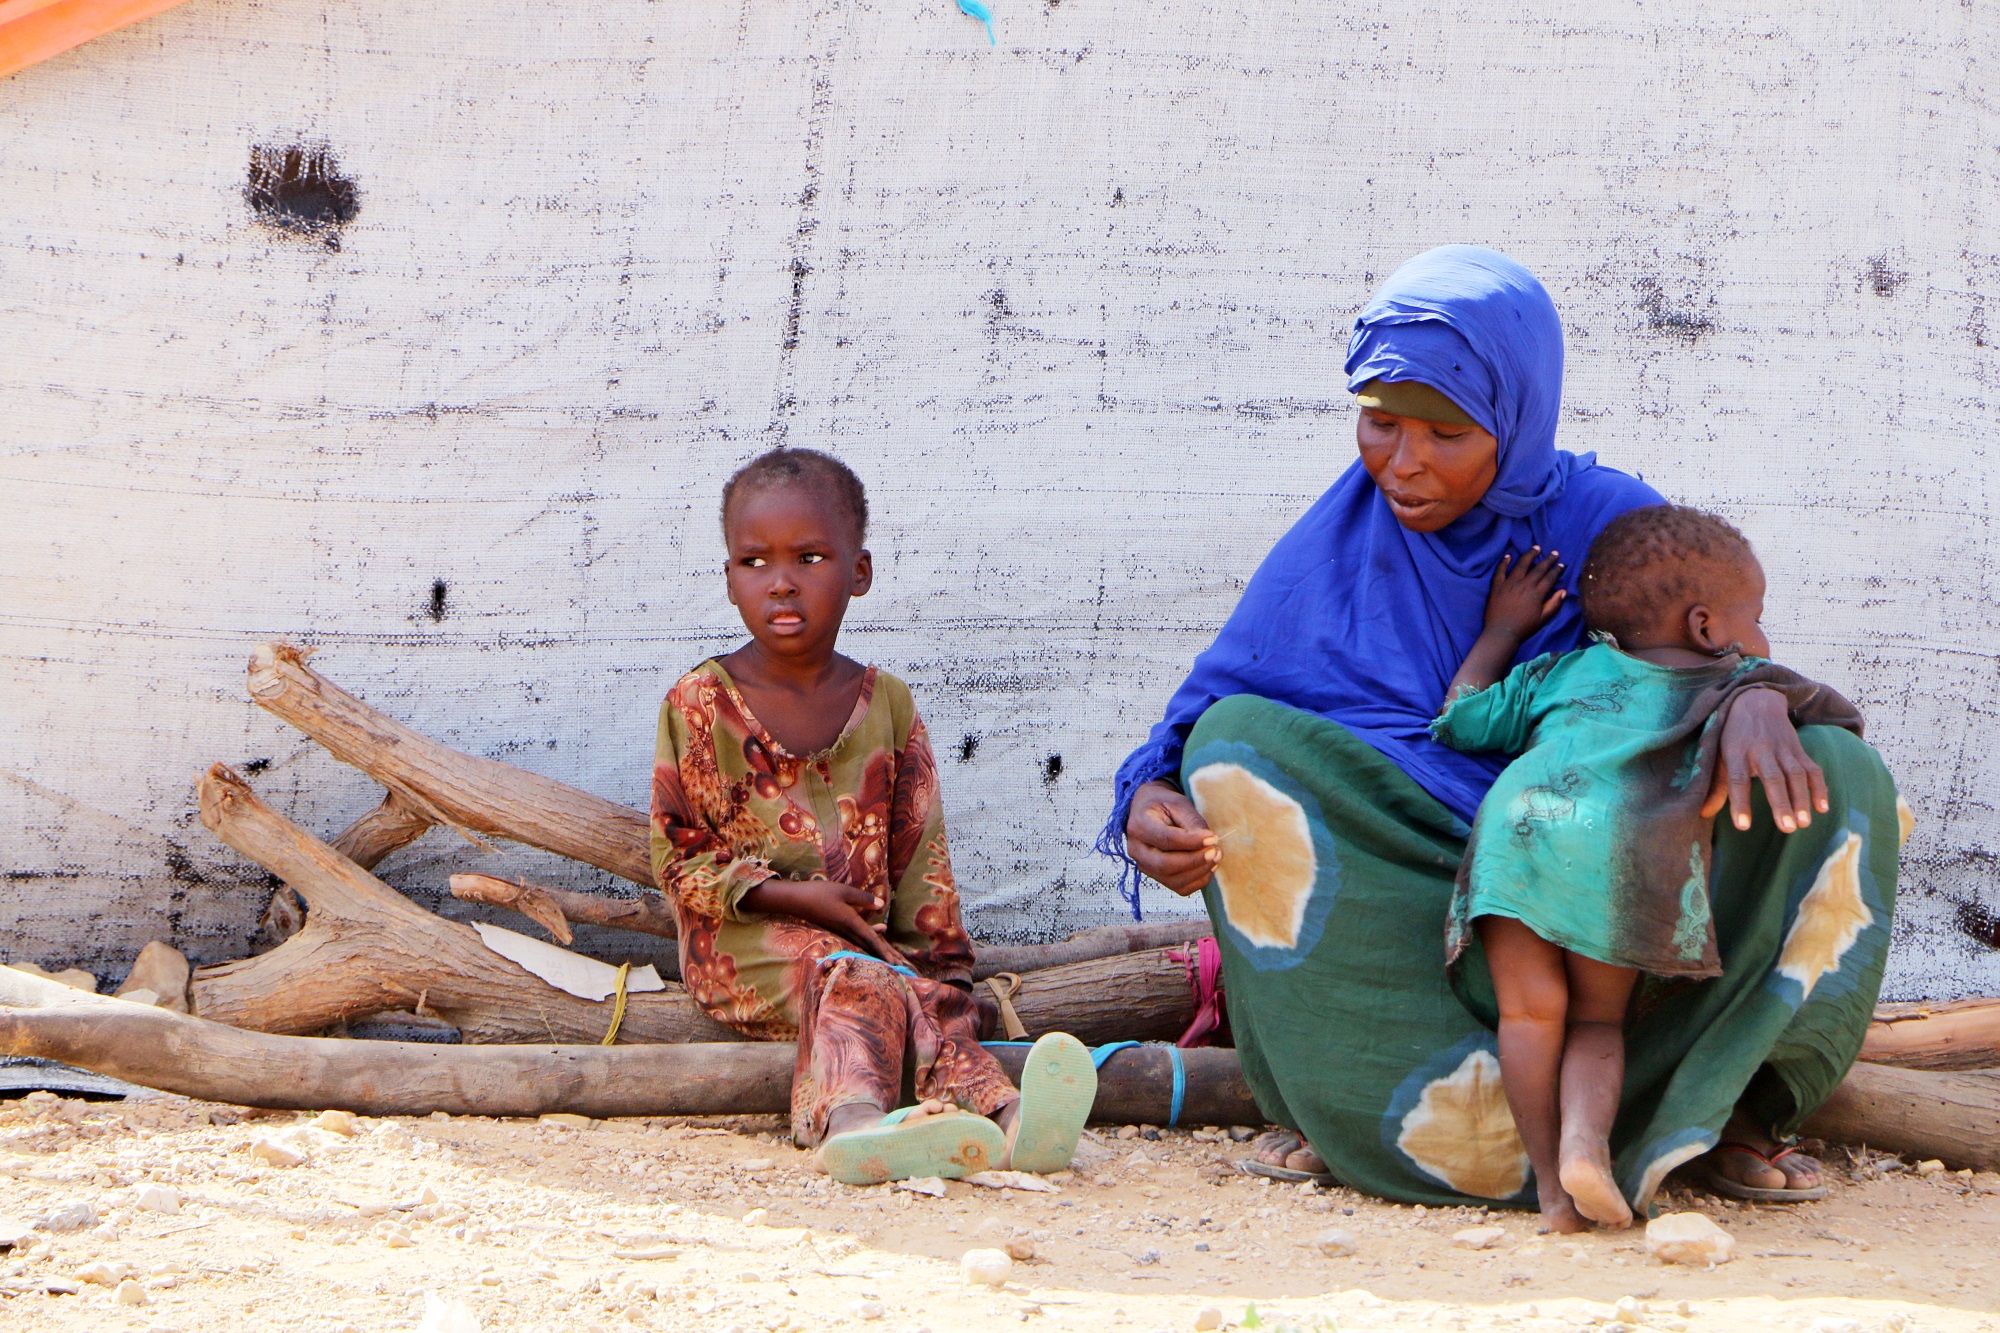 مشاهد لا تنسى من قلب مأساة فيضانات بلدوين الصومالية